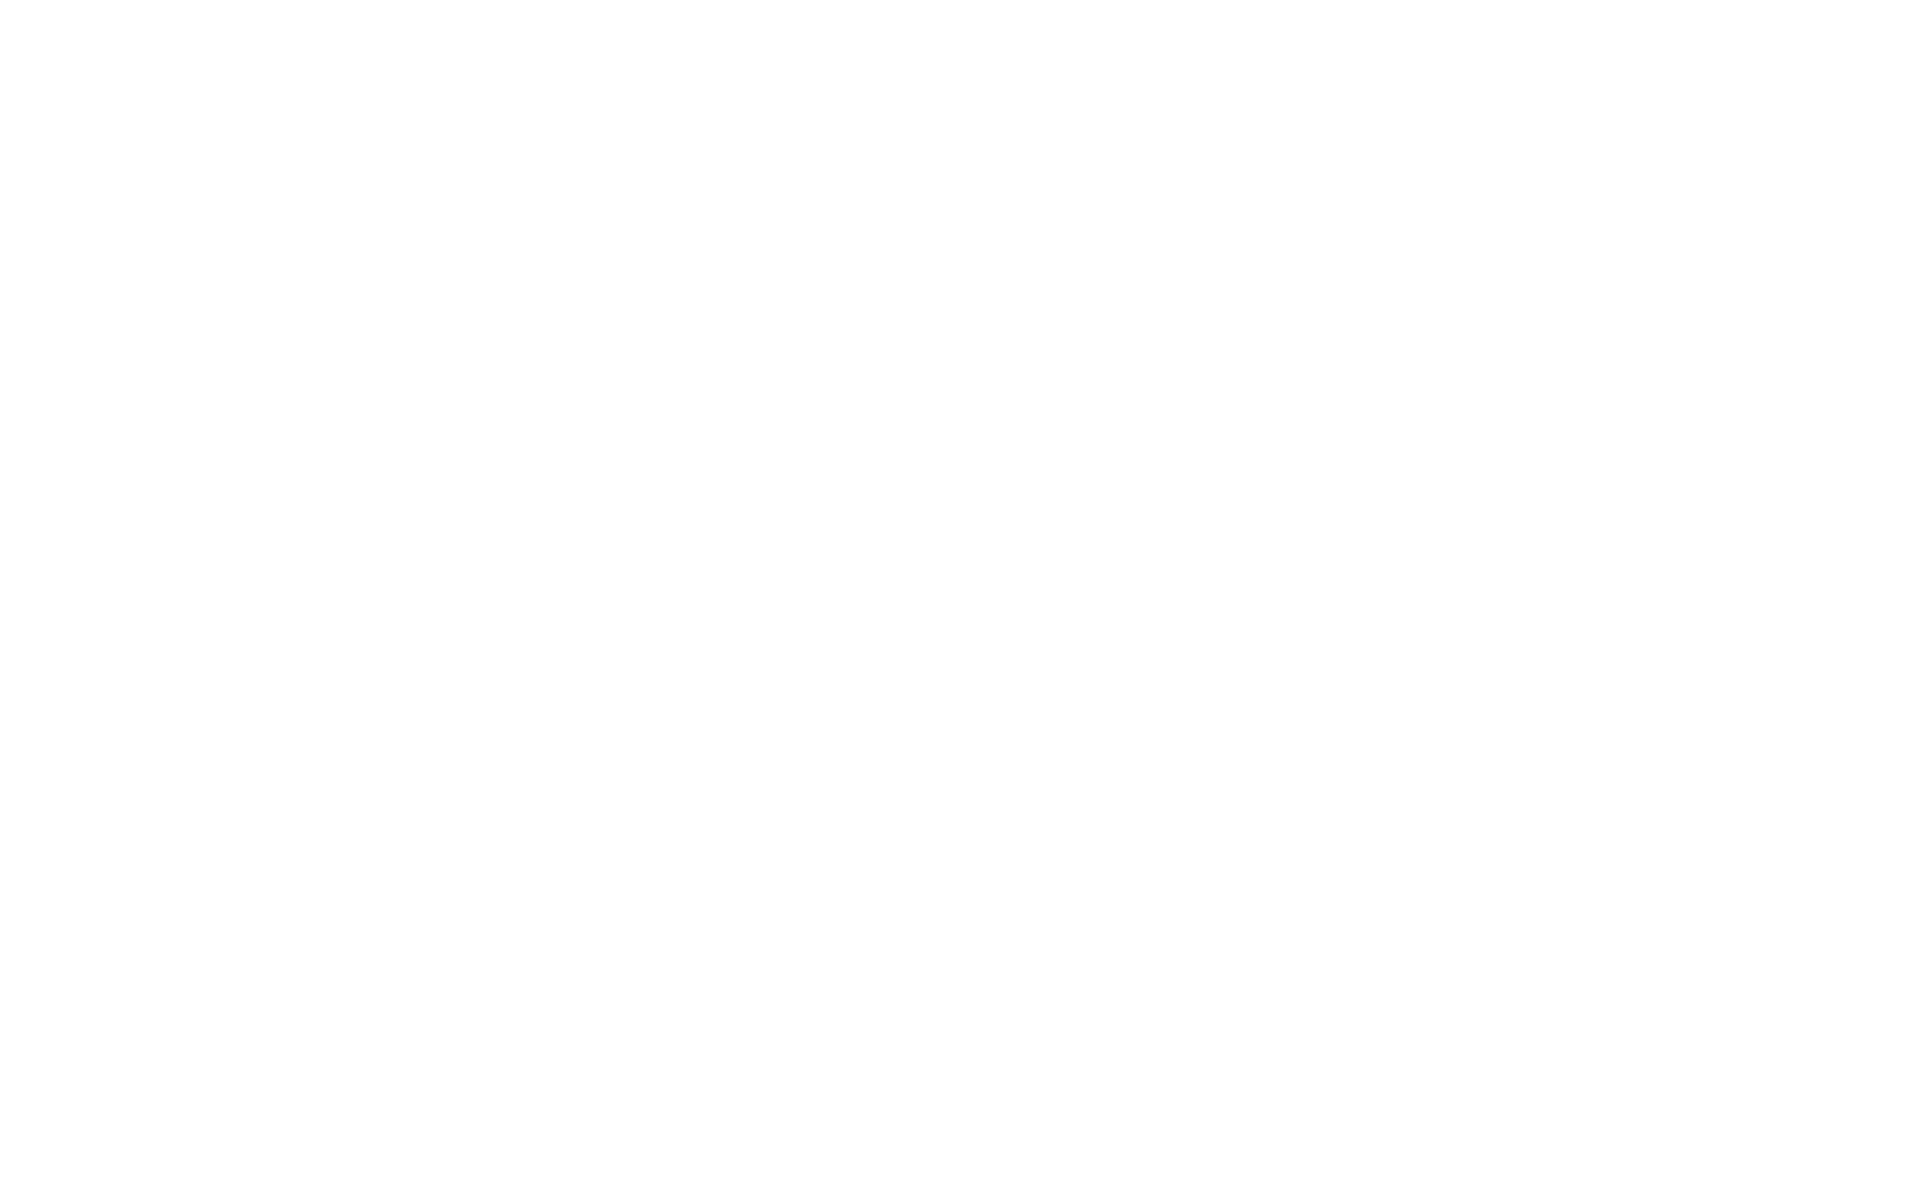 Cuervo_Tradicional_Cristalino_brushed_logo_white